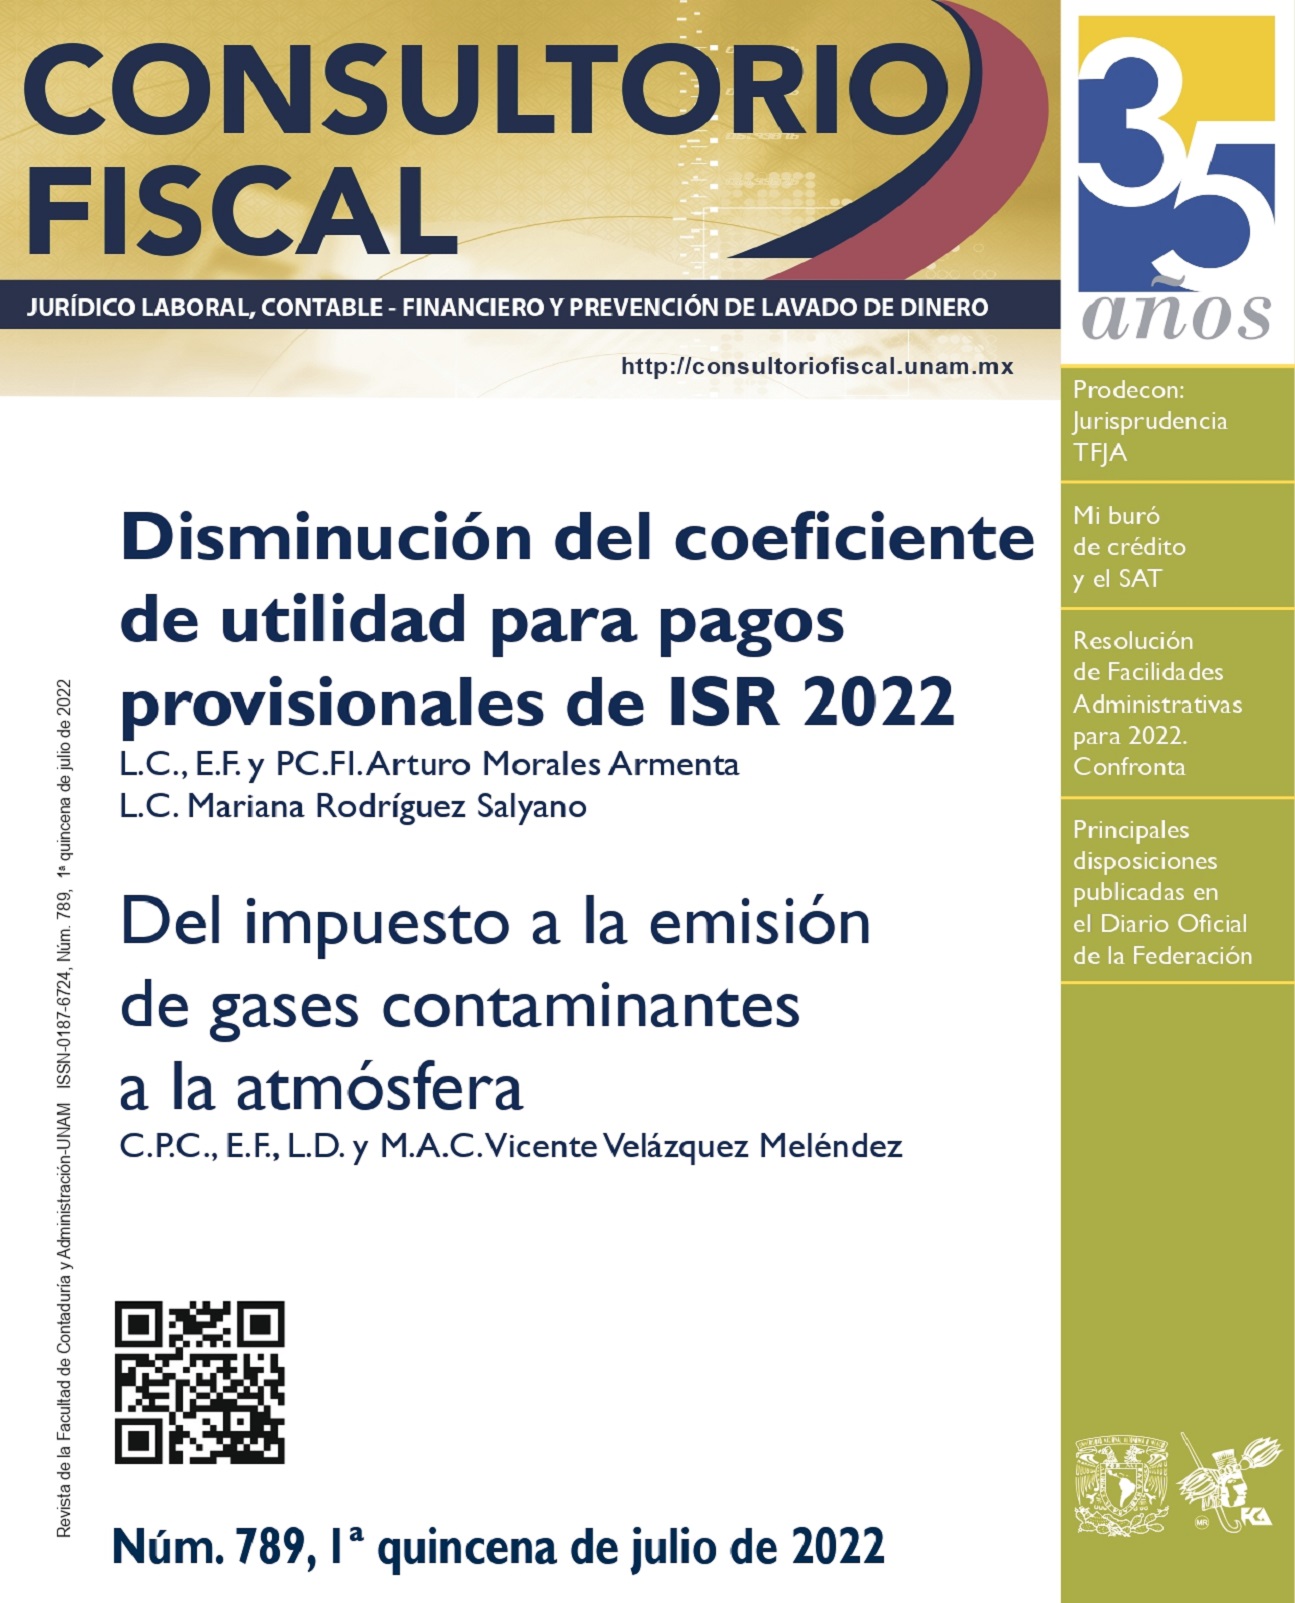 Disminución del coeficiente de utilidad para pagos provisionales de ISR 2022